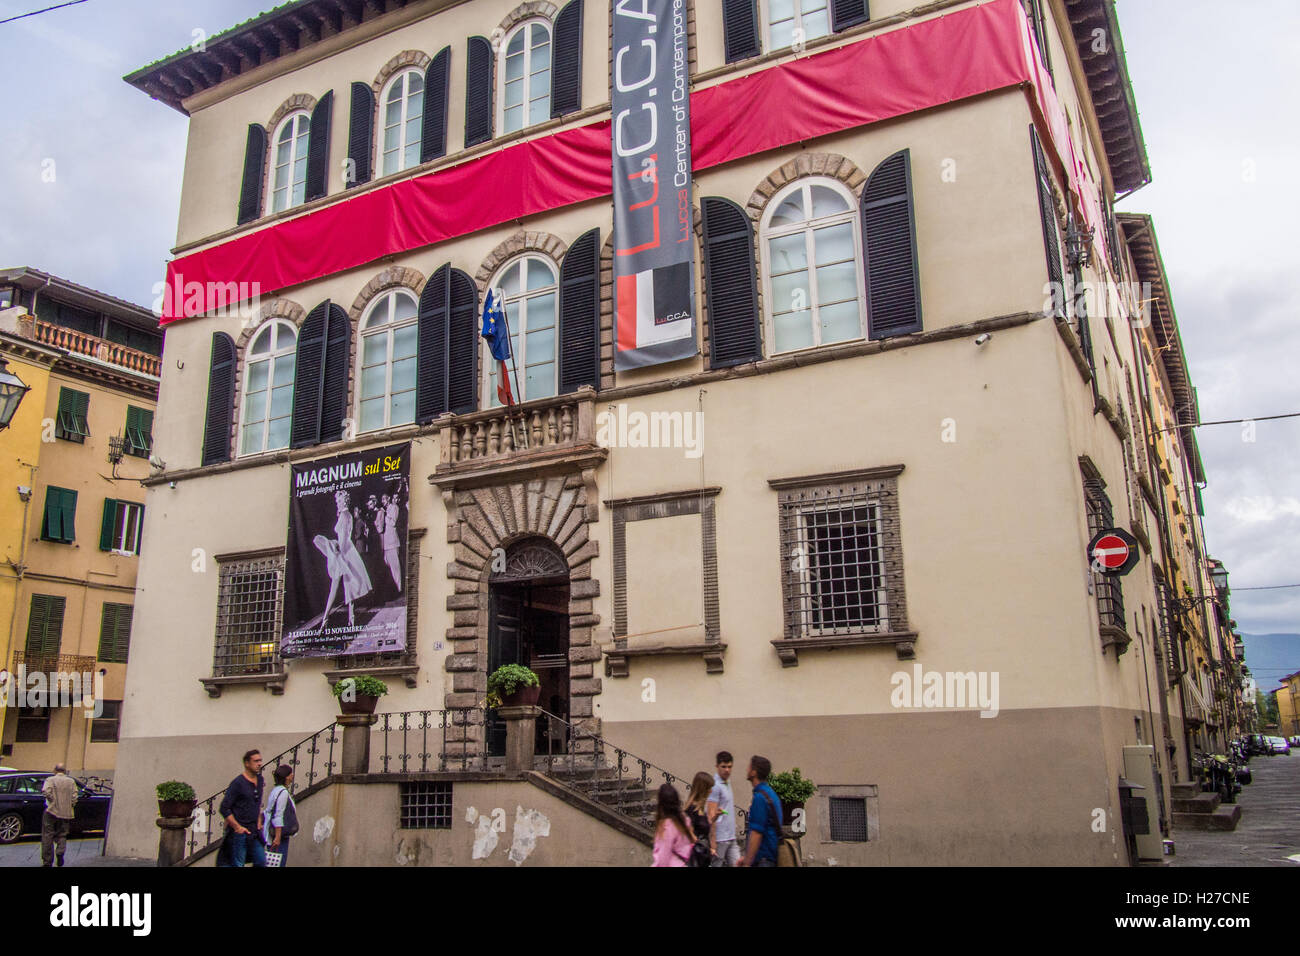 Zentrum für zeitgenössische Kunst, Lucca, Toskana, Italien Stockfoto